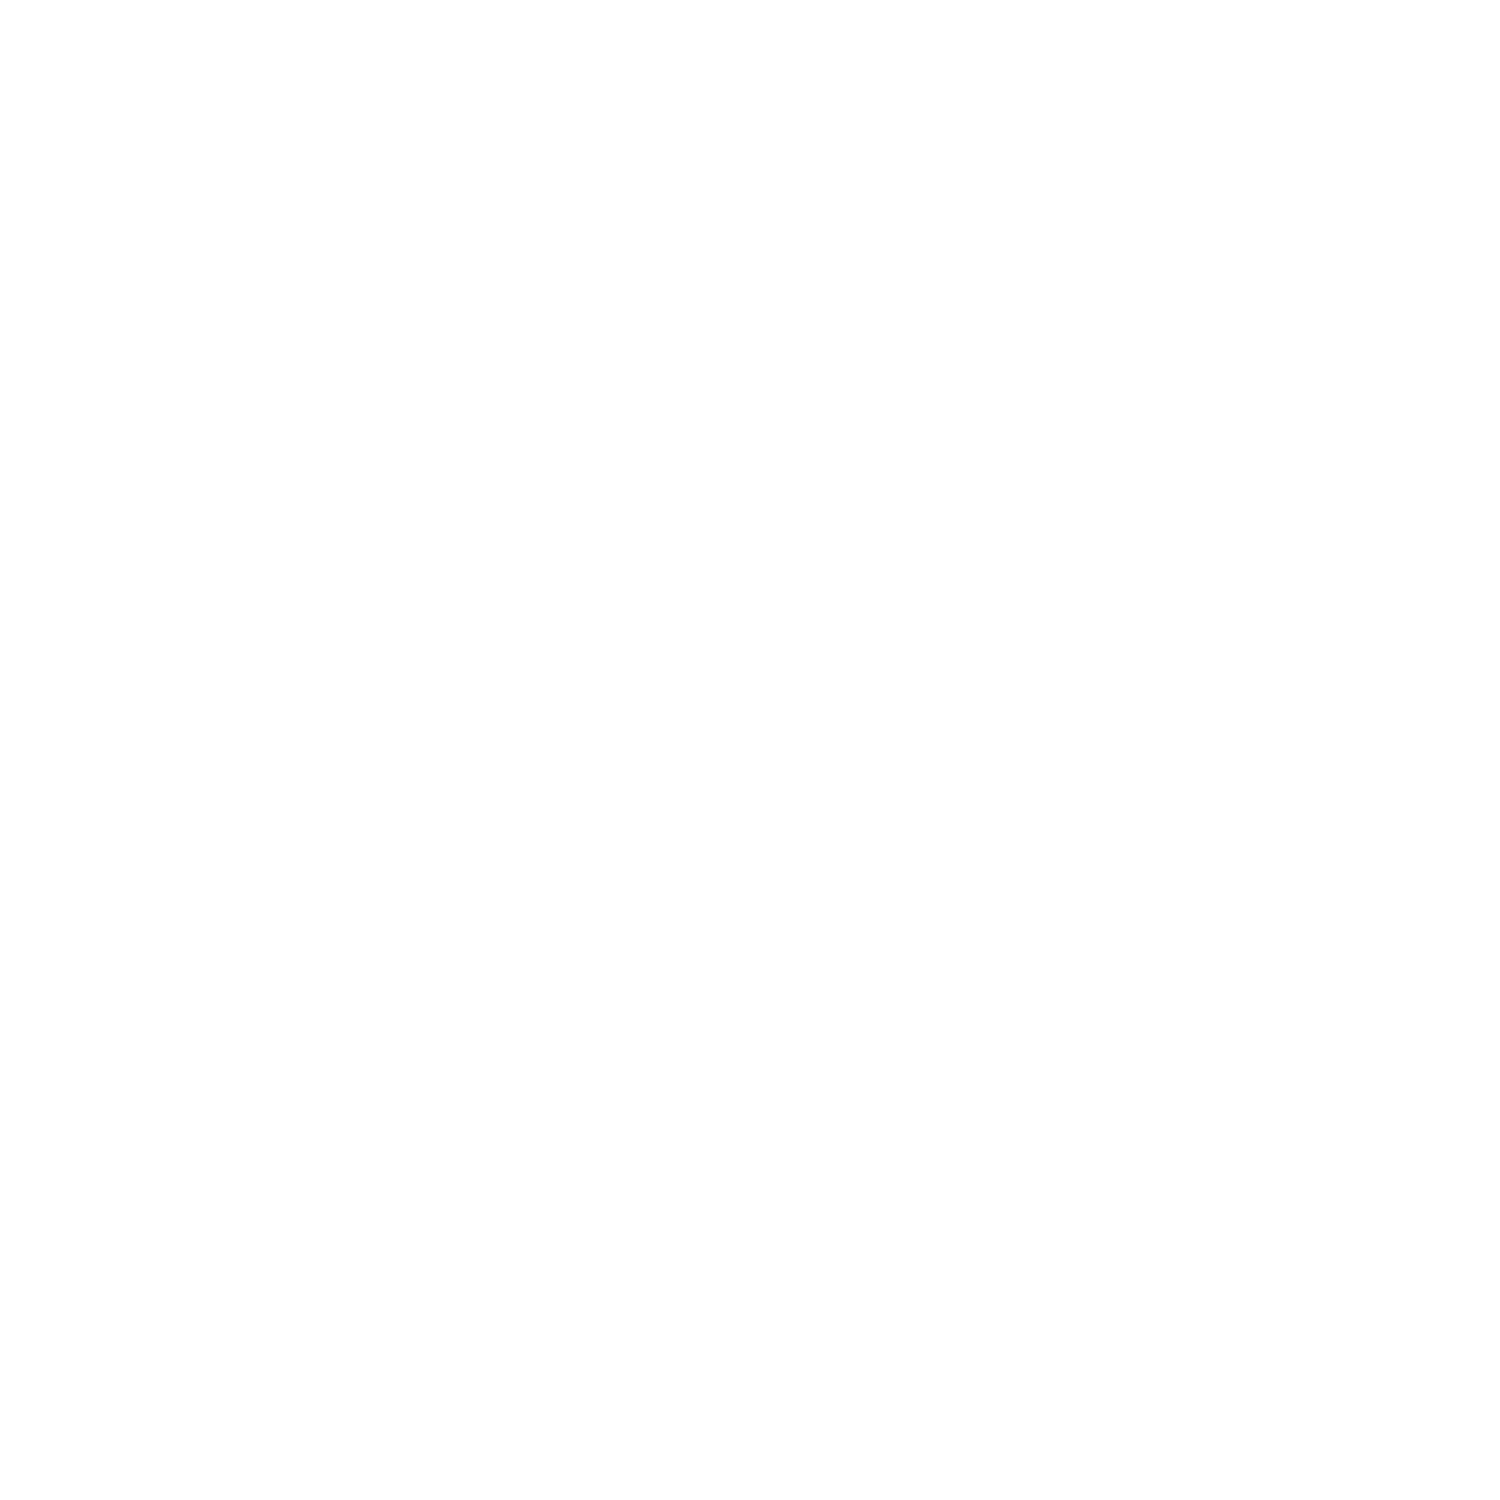 MAREAA Retreats